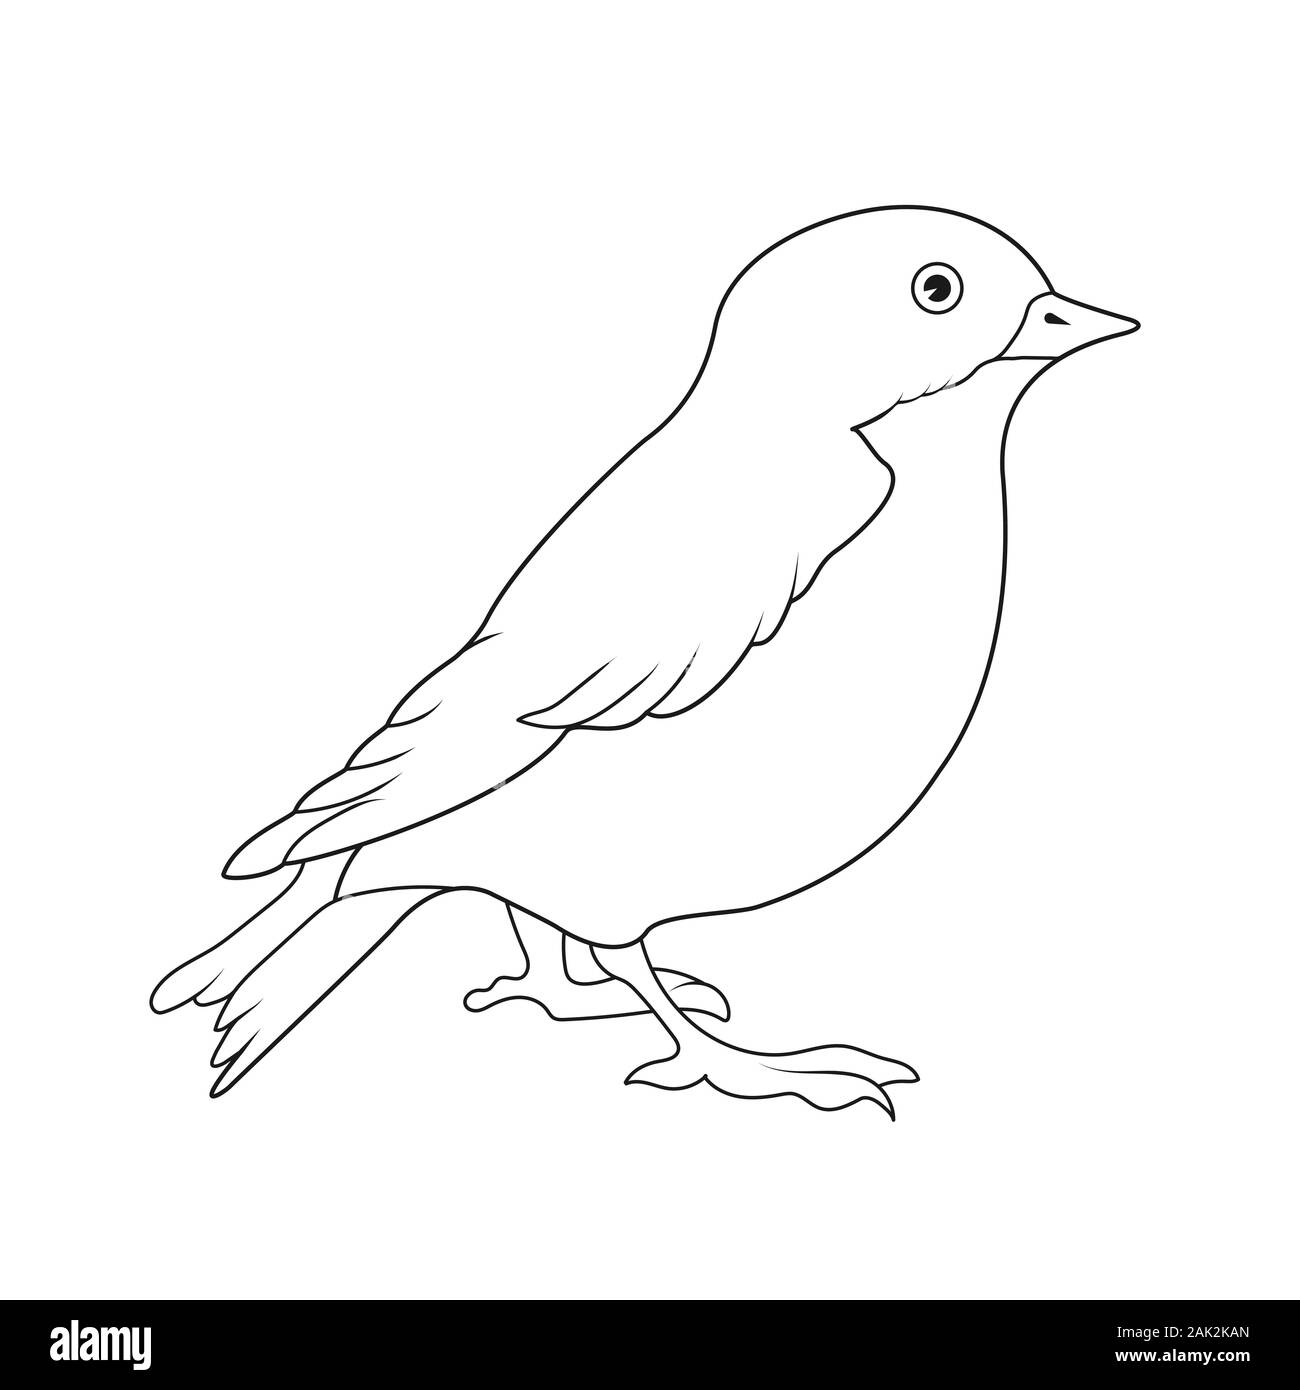 Svuotare il contorno di un uccello. Isolato su uno sfondo bianco. Design piatto per cartoline, fumetti, libri da colorare e decorazione. Illustrazione Vettoriale